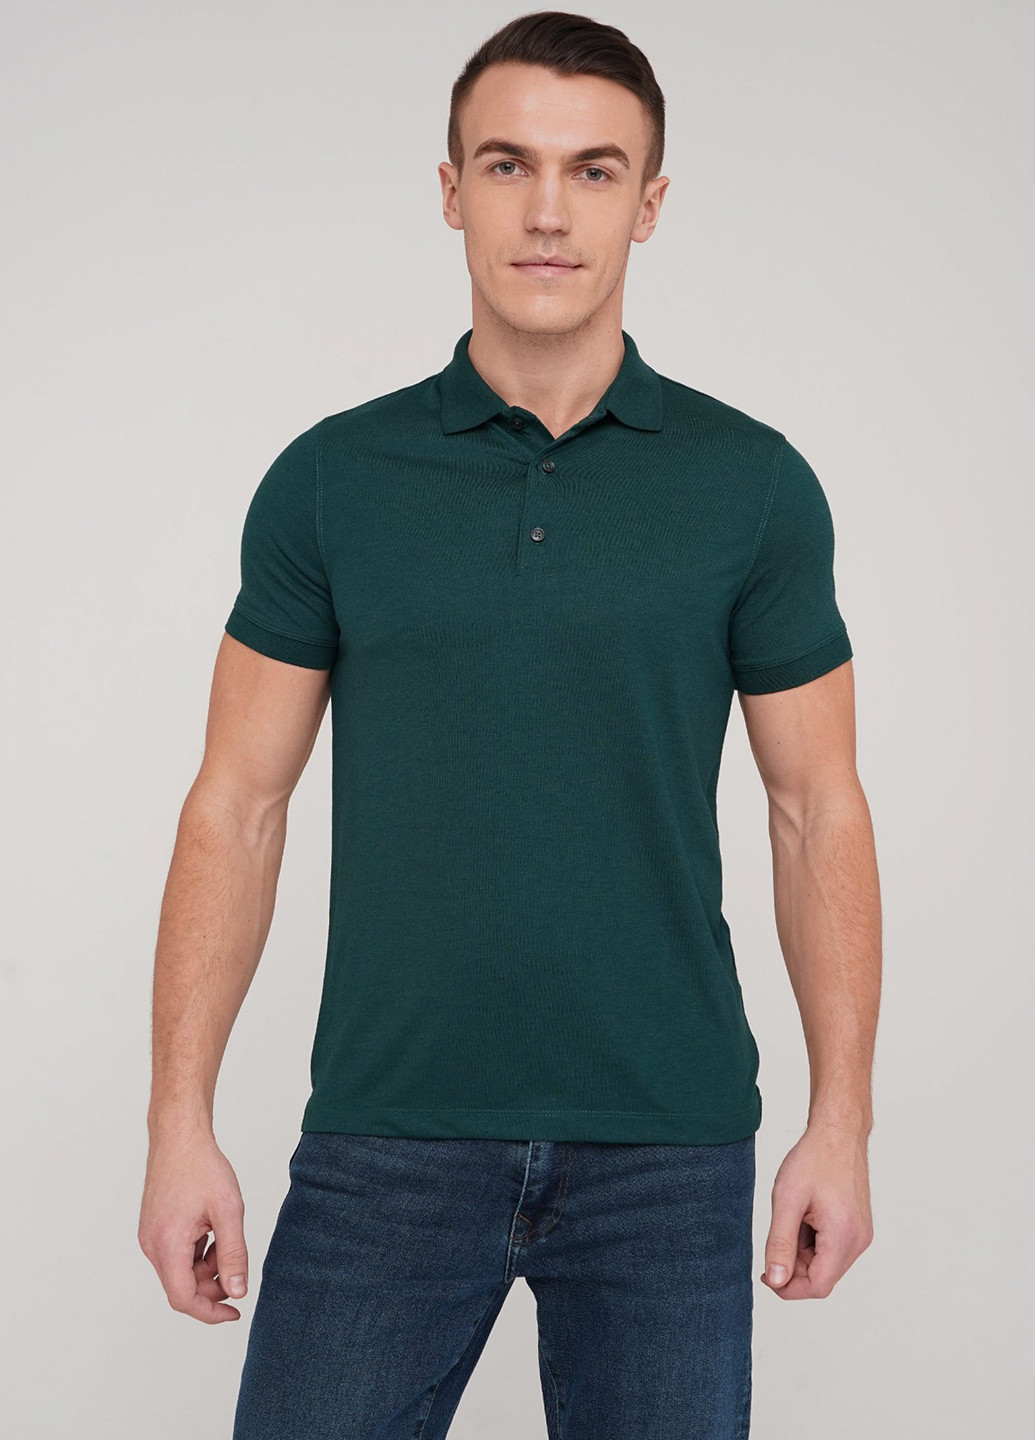 Темно-зеленая футболка-поло для мужчин Trend Collection однотонная